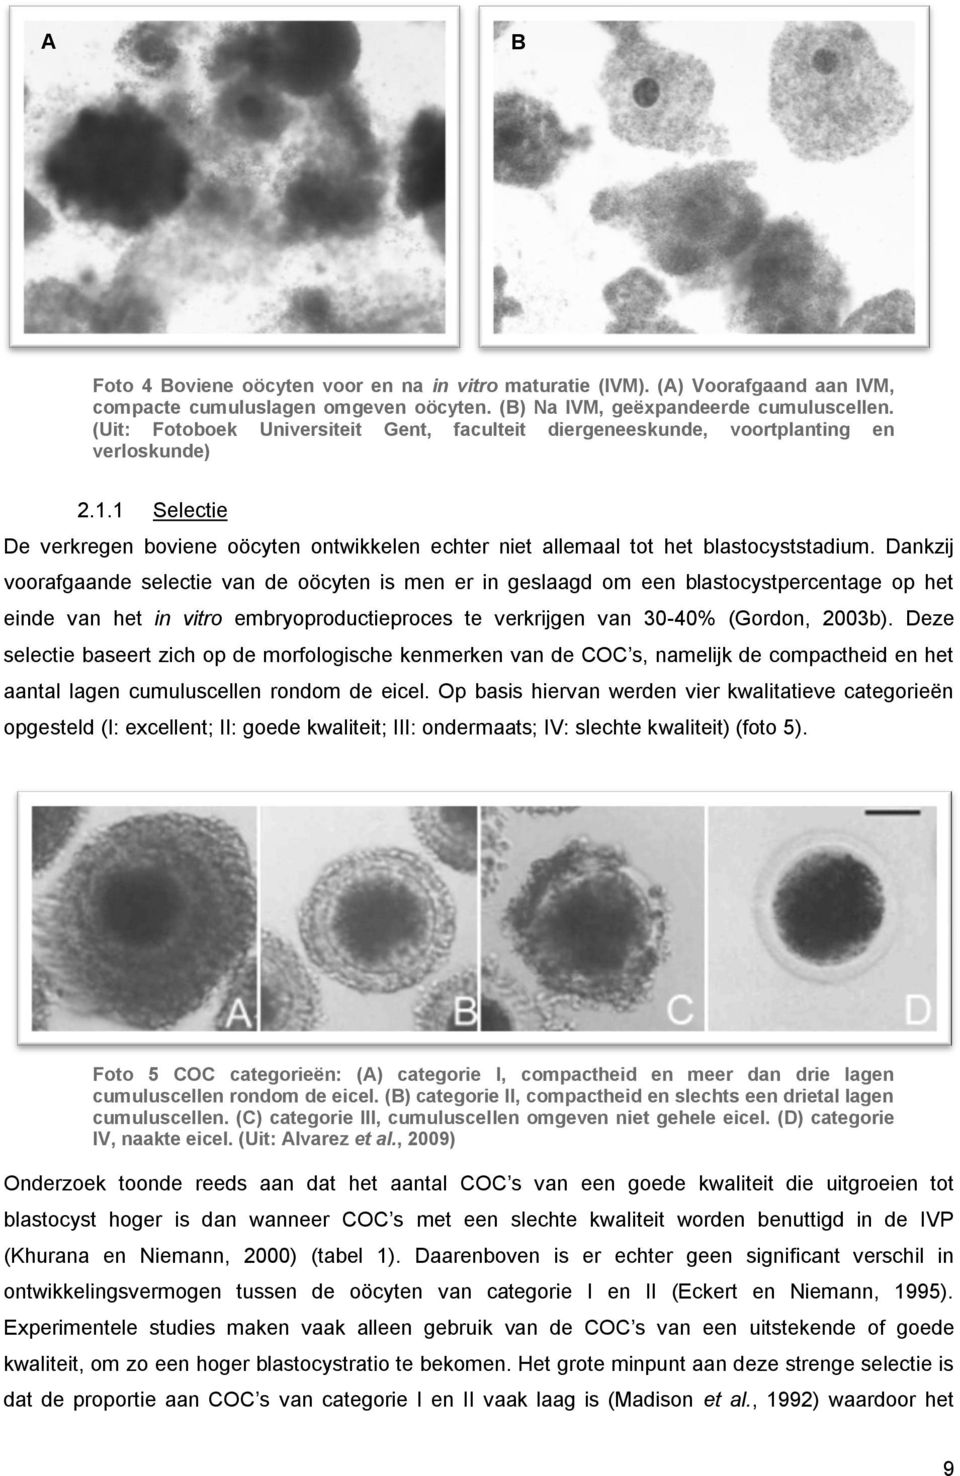 Dankzij voorafgaande selectie van de oöcyten is men er in geslaagd om een blastocystpercentage op het einde van het in vitro embryoproductieproces te verkrijgen van 30-40% (Gordon, 2003b).